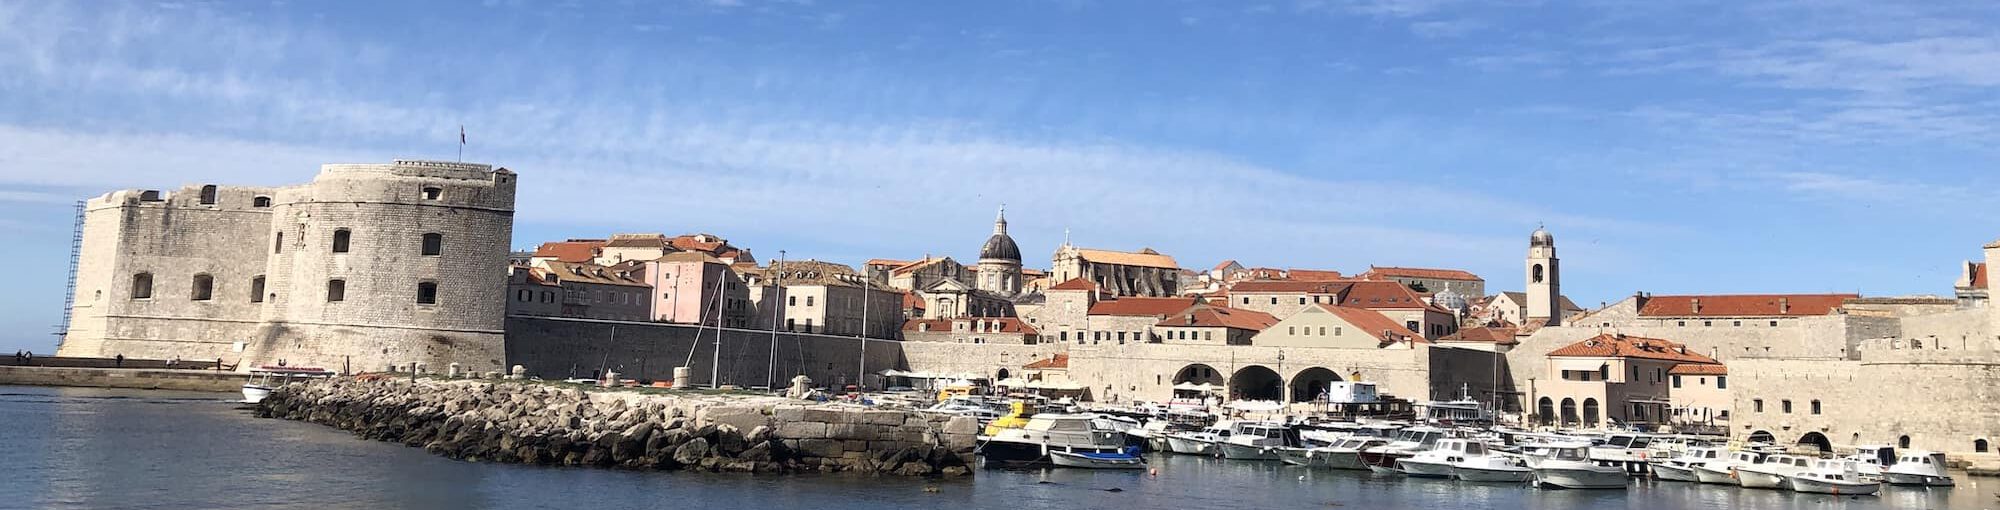 Dubrovnik old town harbor